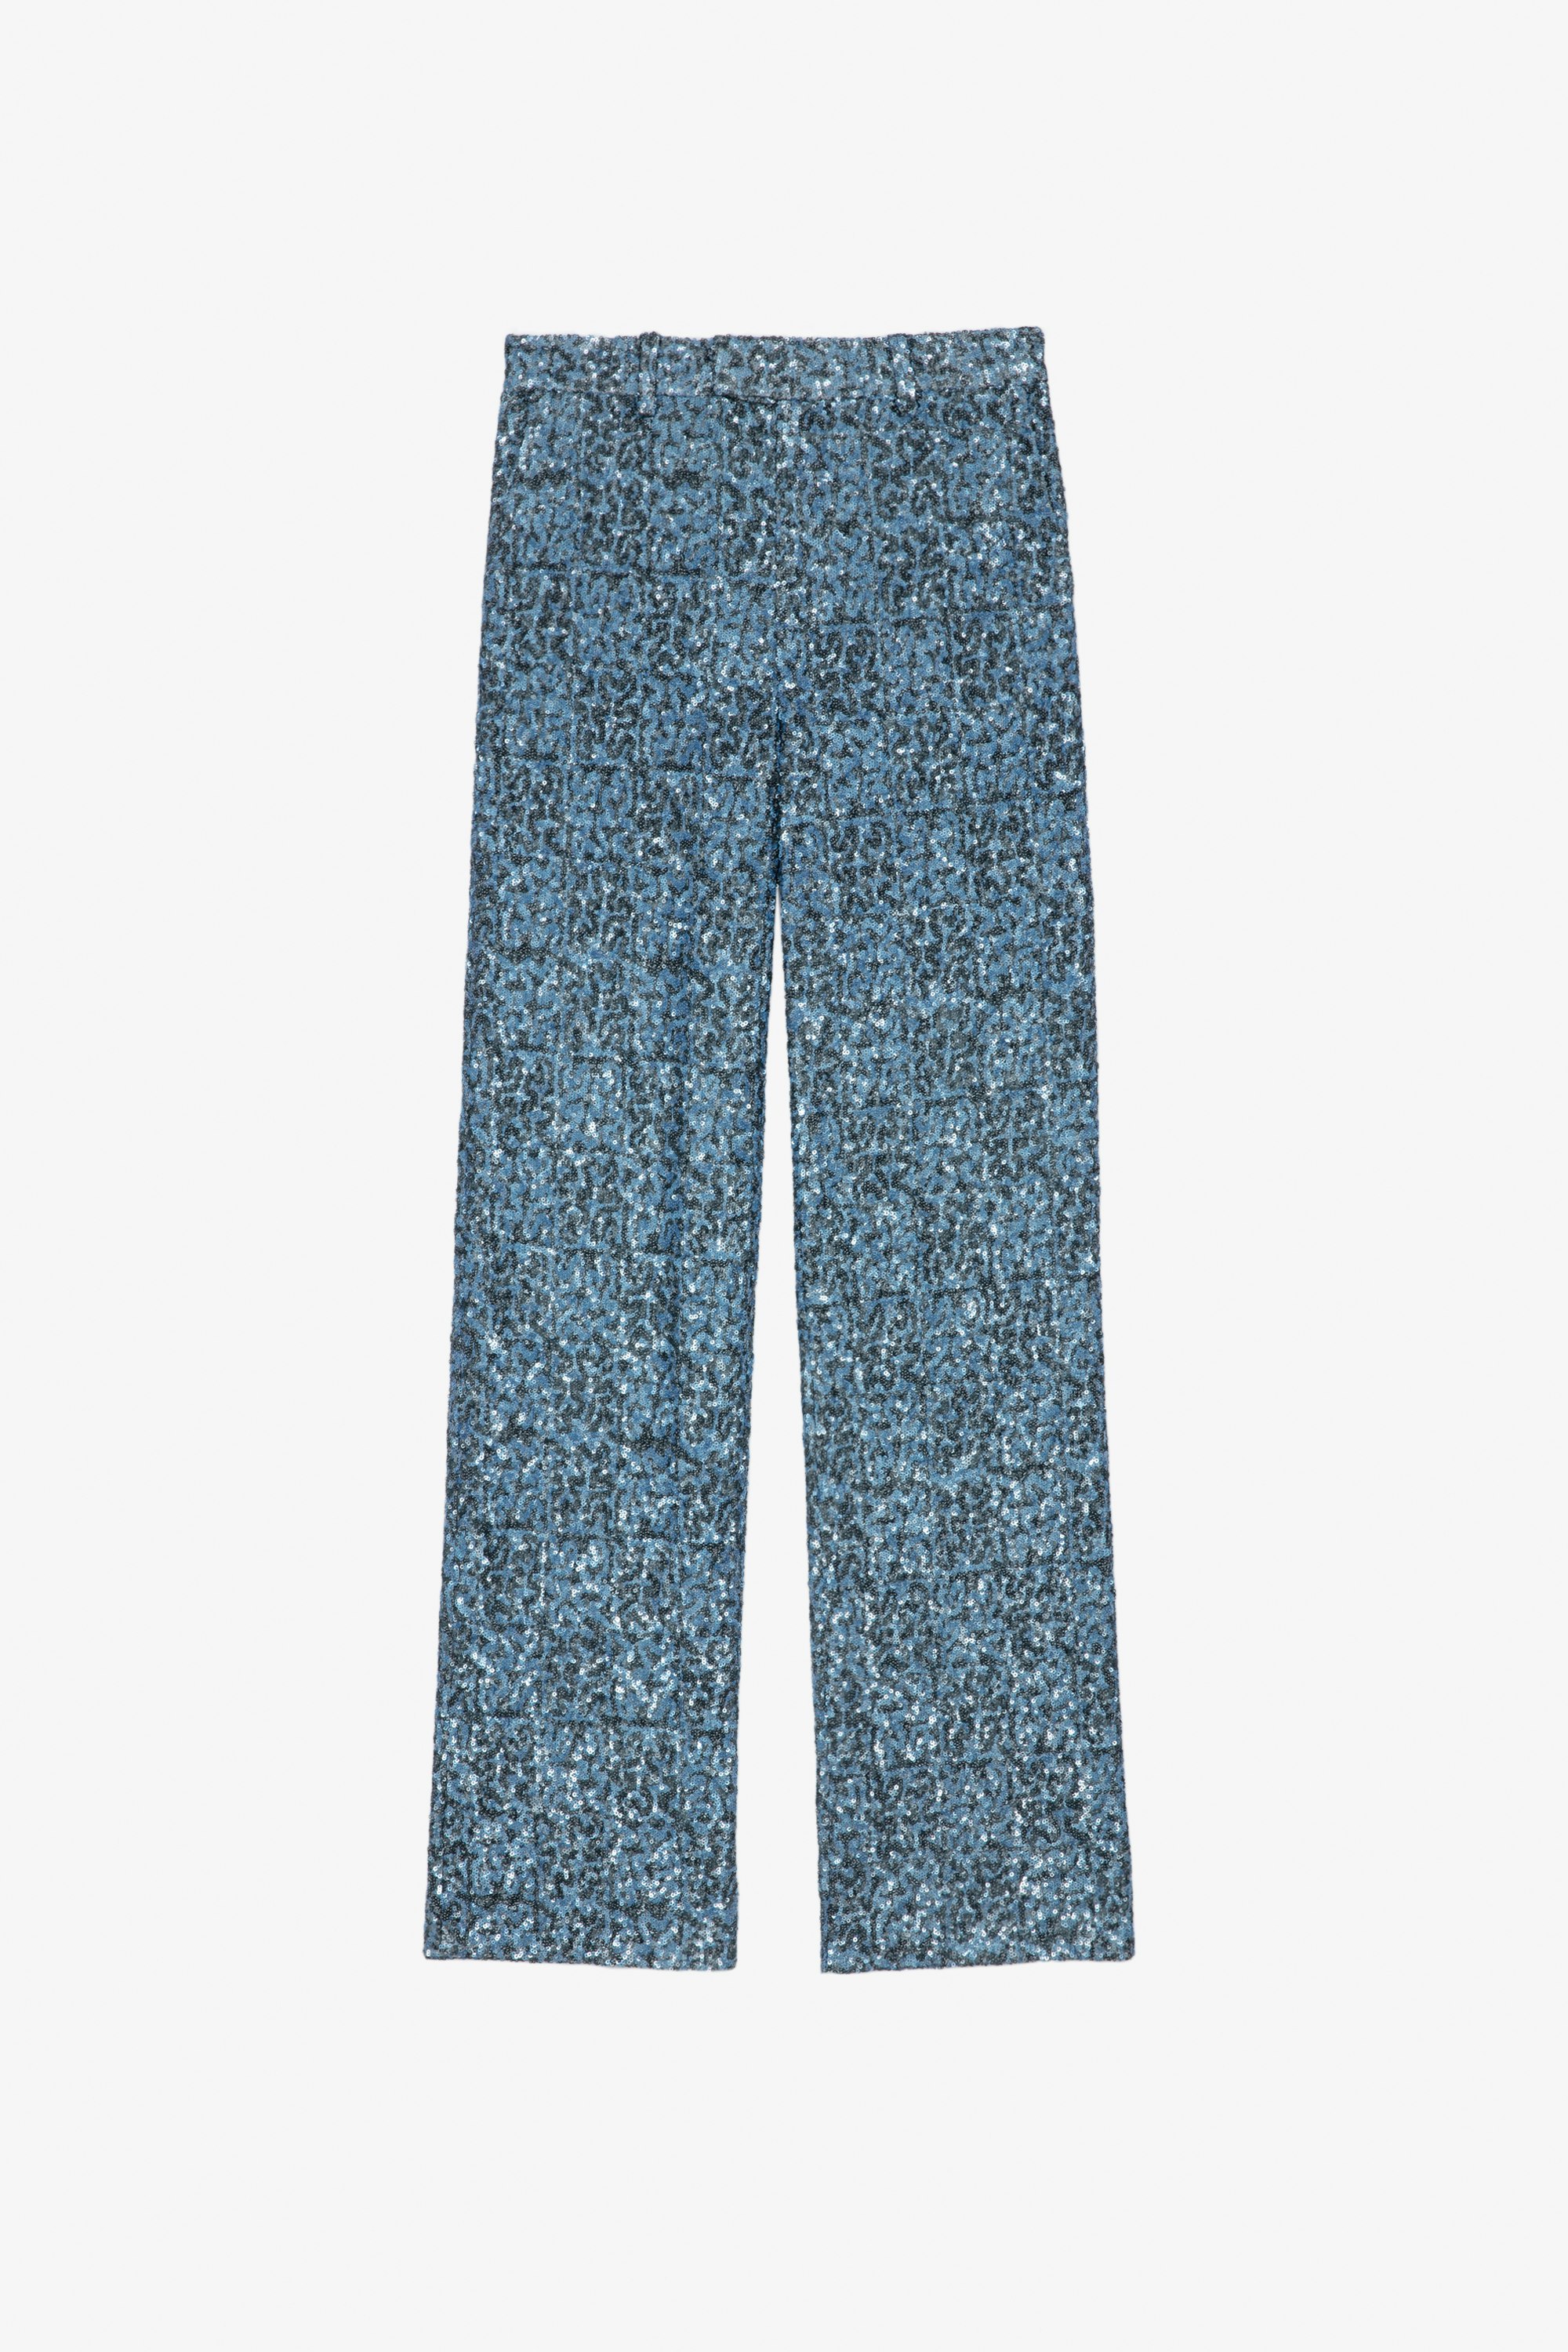 Pantalón Peter Pantalón ancho azul para mujer con lentejuelas